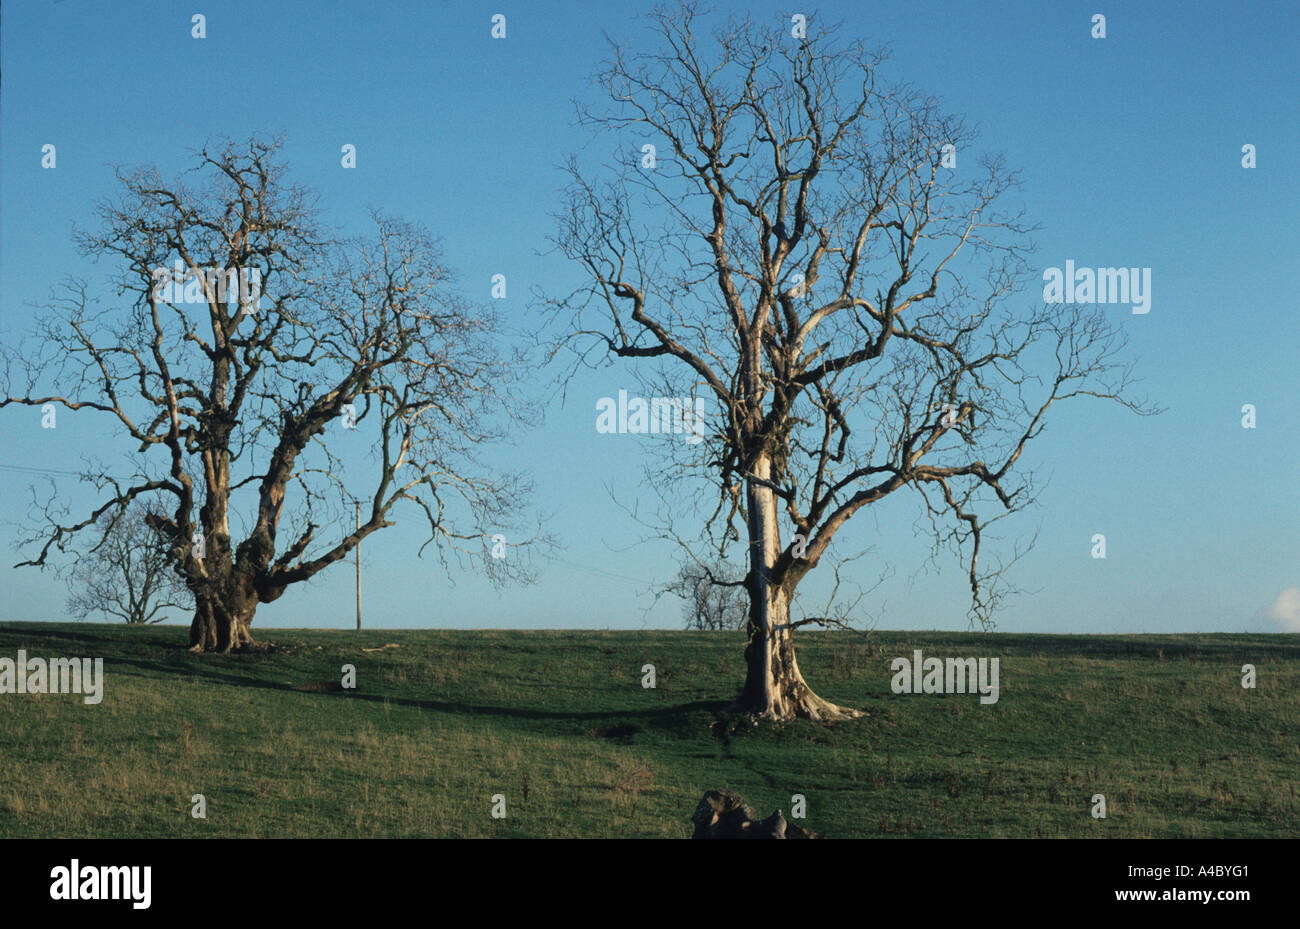 Muertos Olmo Ulmus spp. de árboles muertos por la enfermedad del olmo holandés Ceratocystis ulmi Foto de stock